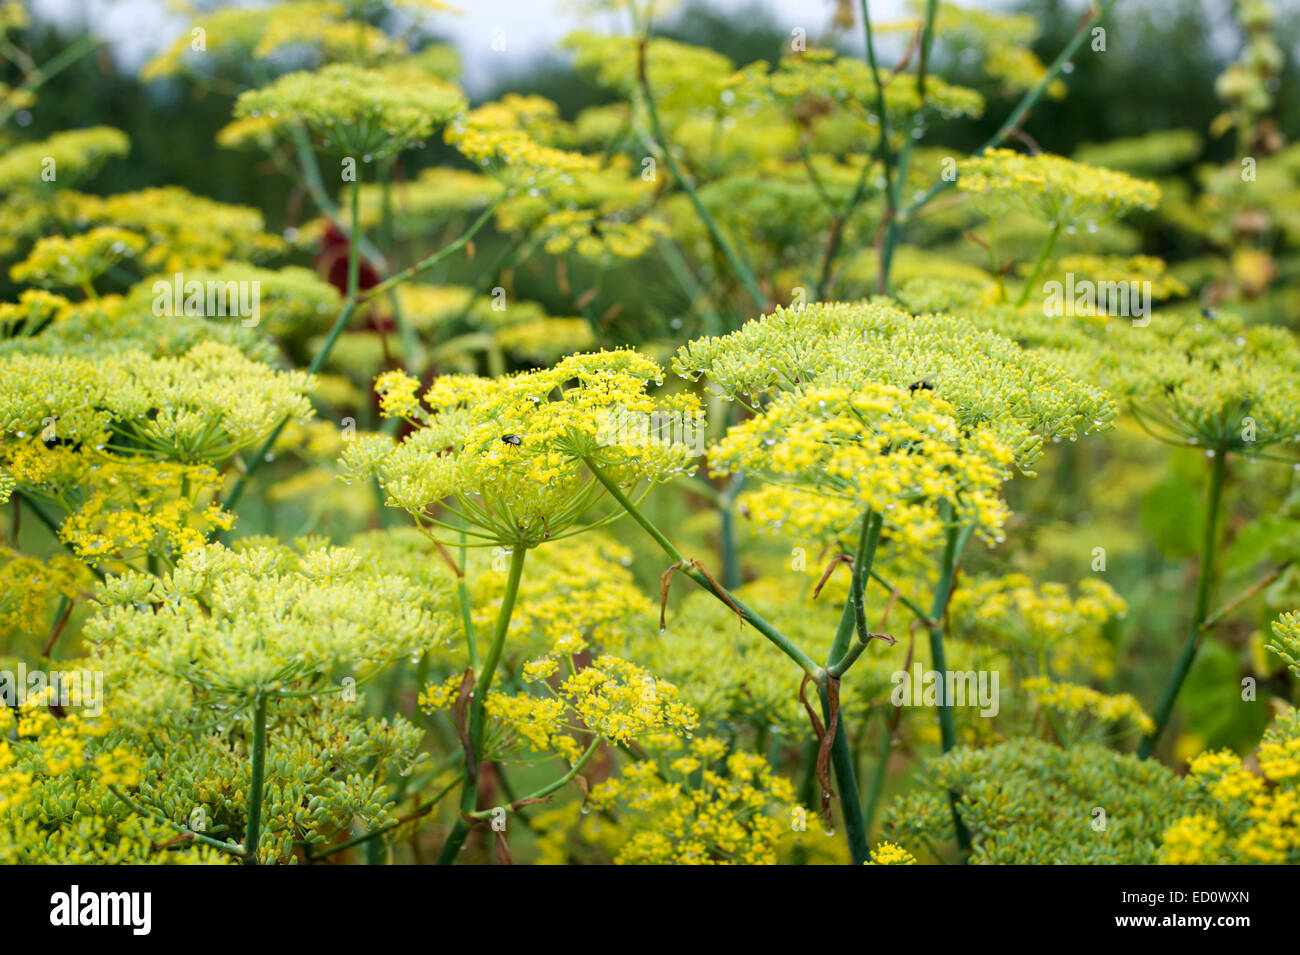 Massierten Fenchel Blüten zeigen ein eindrucksvolles Bild in dieser großen Kräutergarten Stockfoto